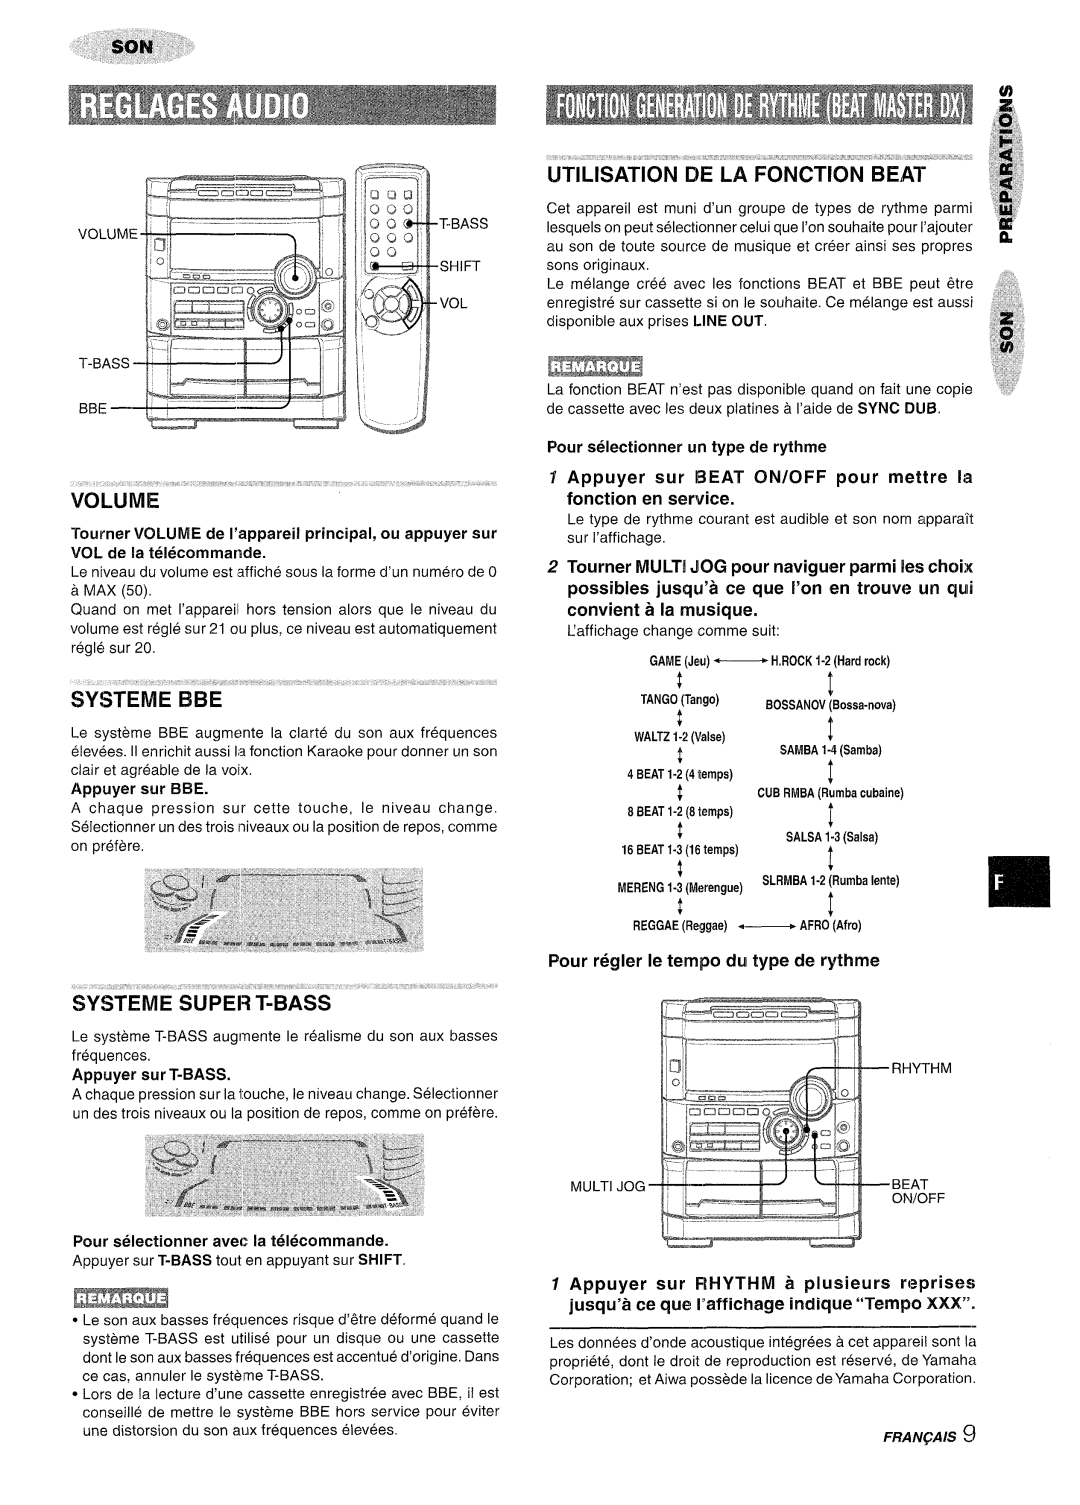 Sony NSX-A767 manual Utilisation De La Fonction Beat, Appuyer sur IBEAT ON/OFF pour mettre la fonction en service 